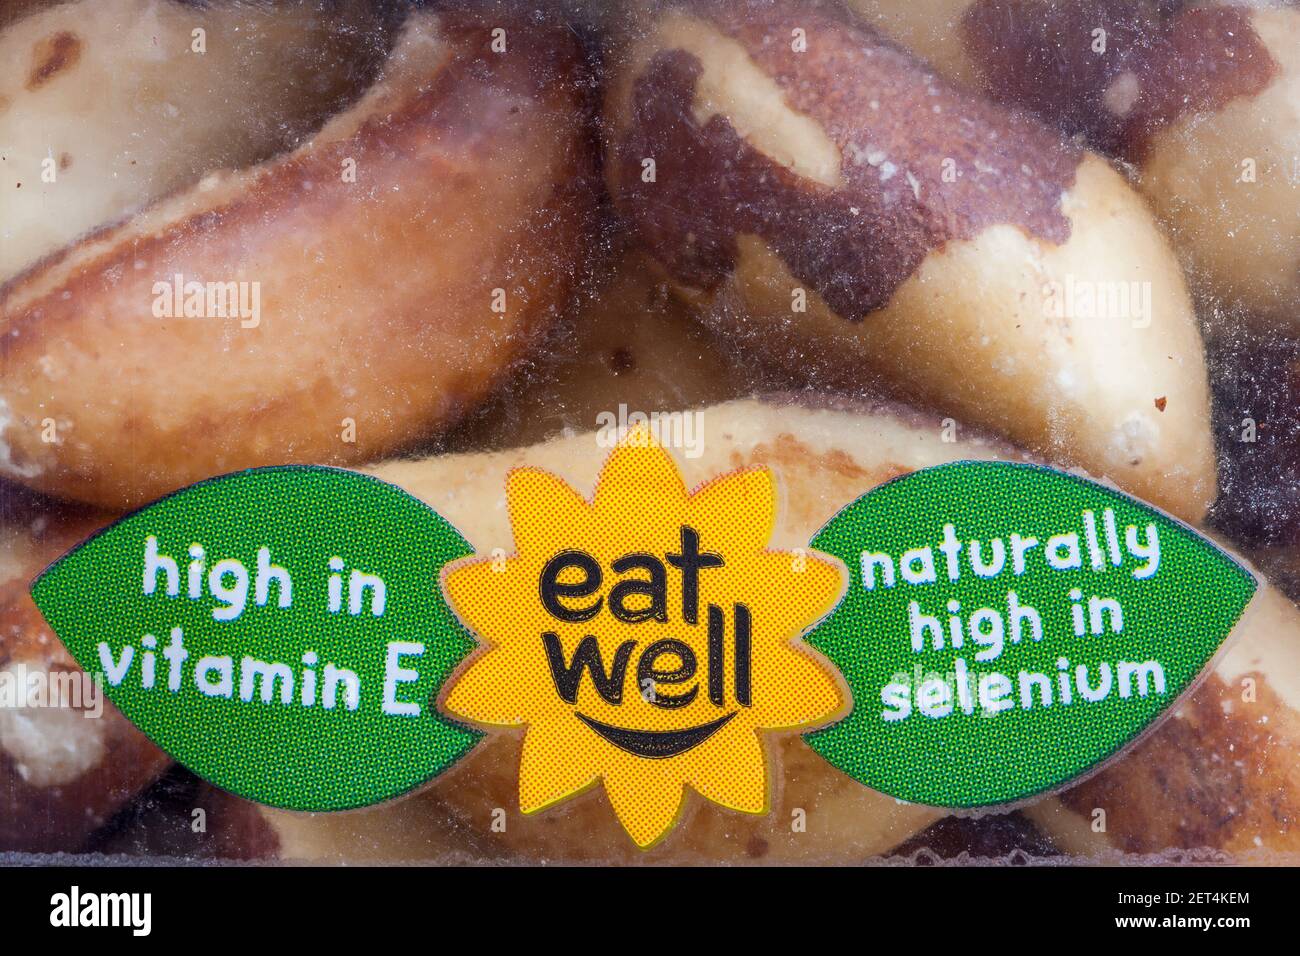 Riche en vitamine E naturellement élevé en sélénium mangez bien Détails sur le paquet de noix M&S Natural brazil Banque D'Images